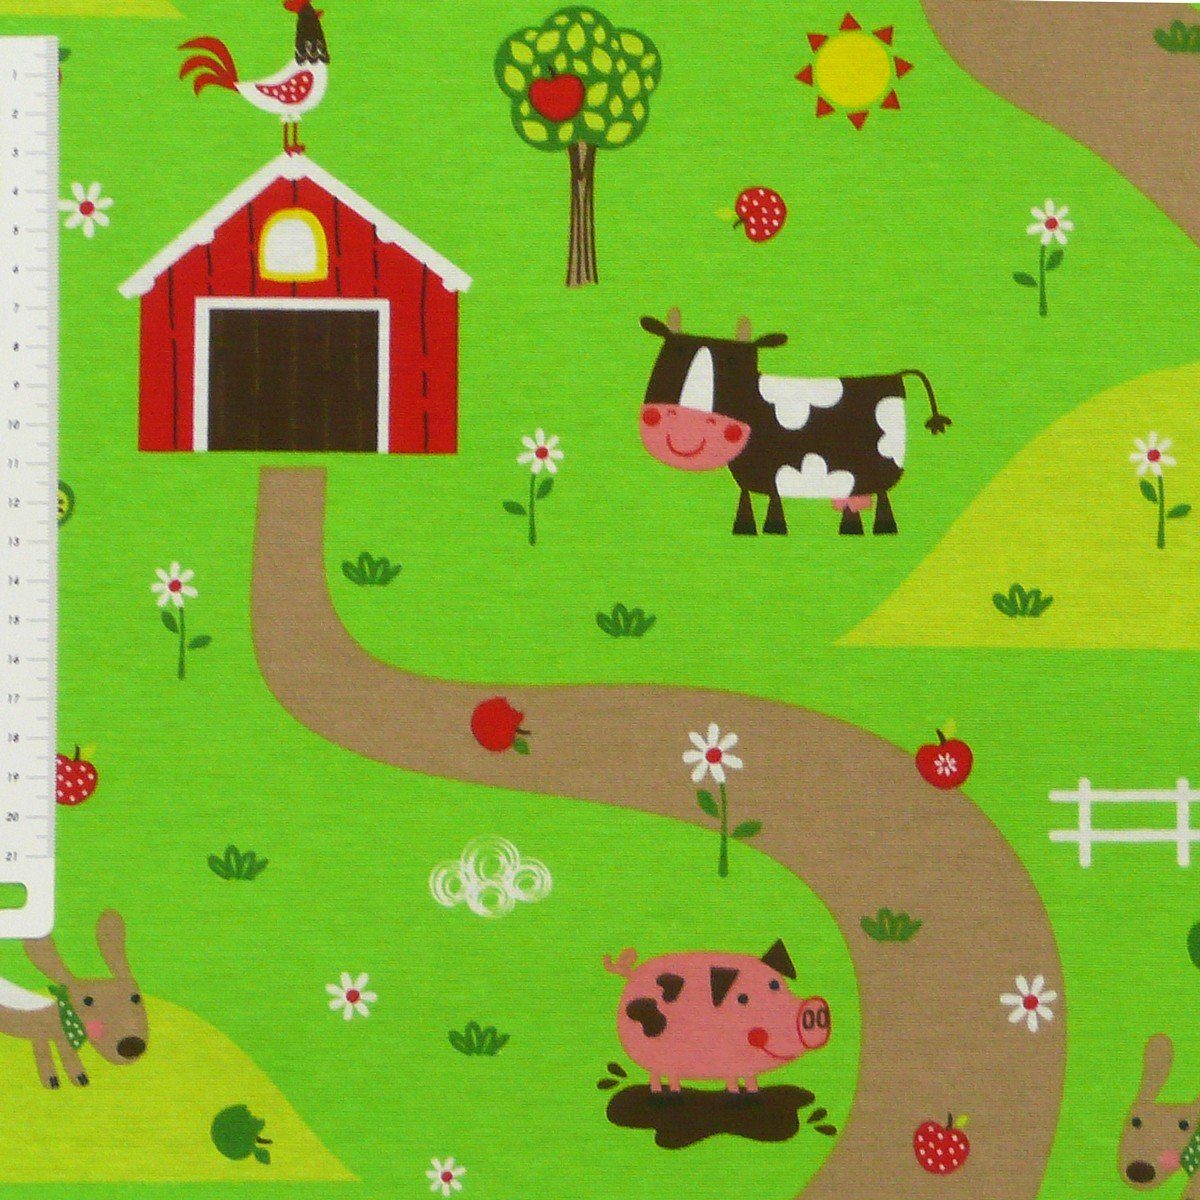 SCHÖNER LEBEN. Bauernhof bunt Leben Dekokissen 50x50cm grün Kissenhülle Schöner Tiere